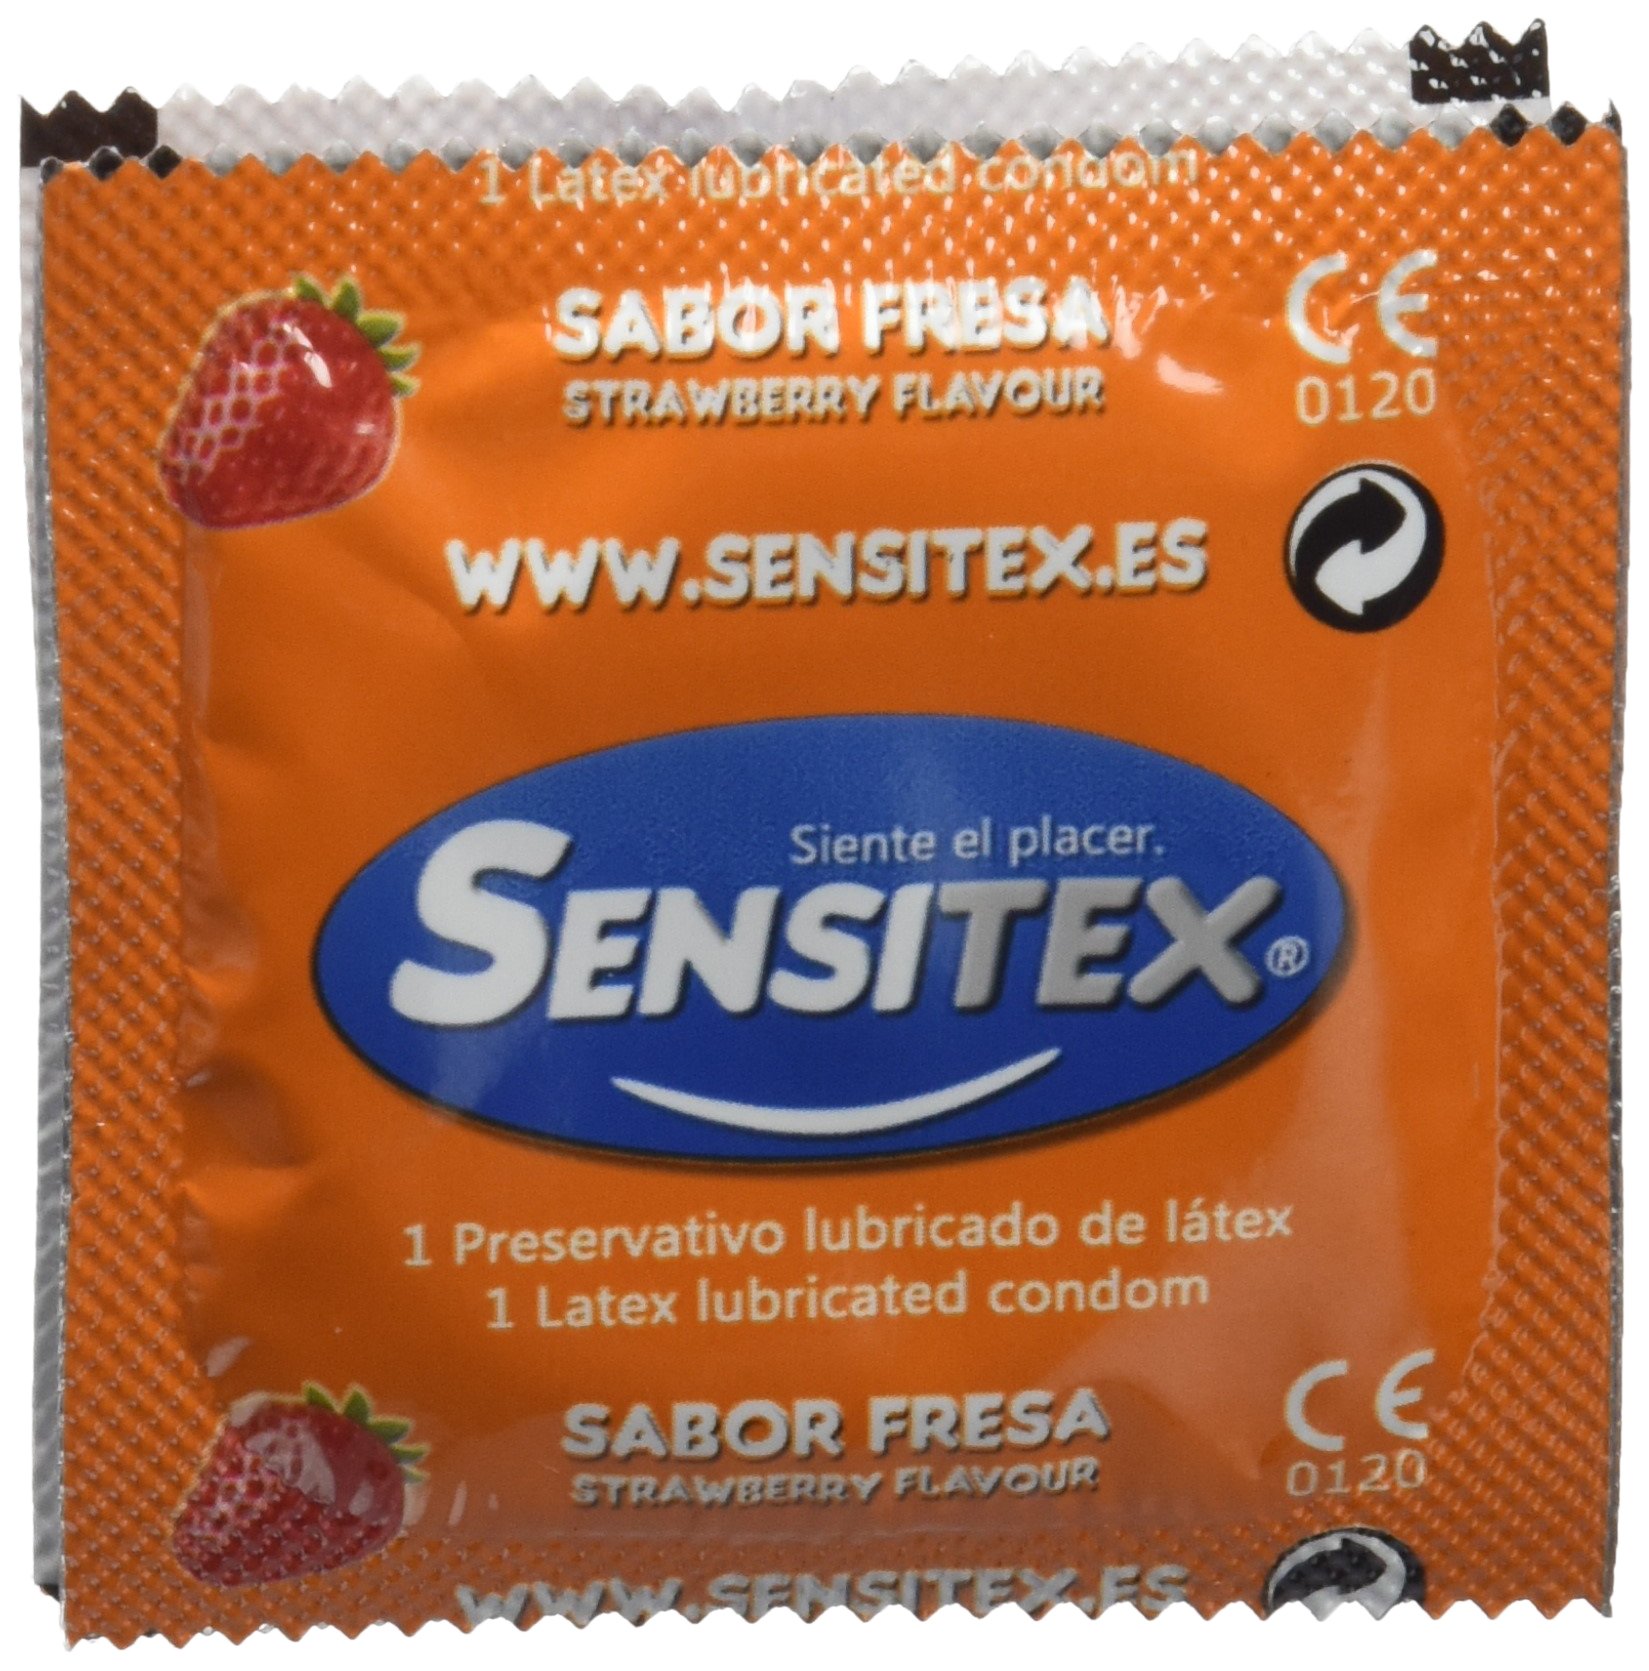 SENSITEX Männliches Kondom in Safer Sex, 100 g